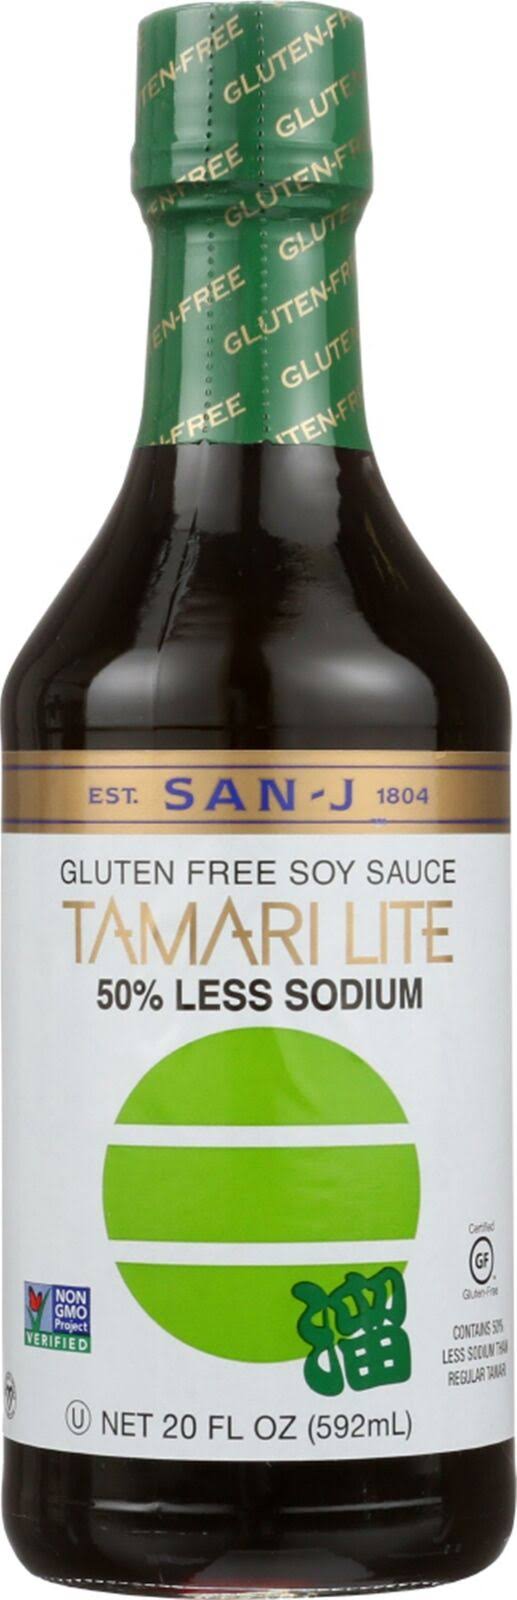 San J Tamari Gluten Free Reduced Sodium Soy Sauce